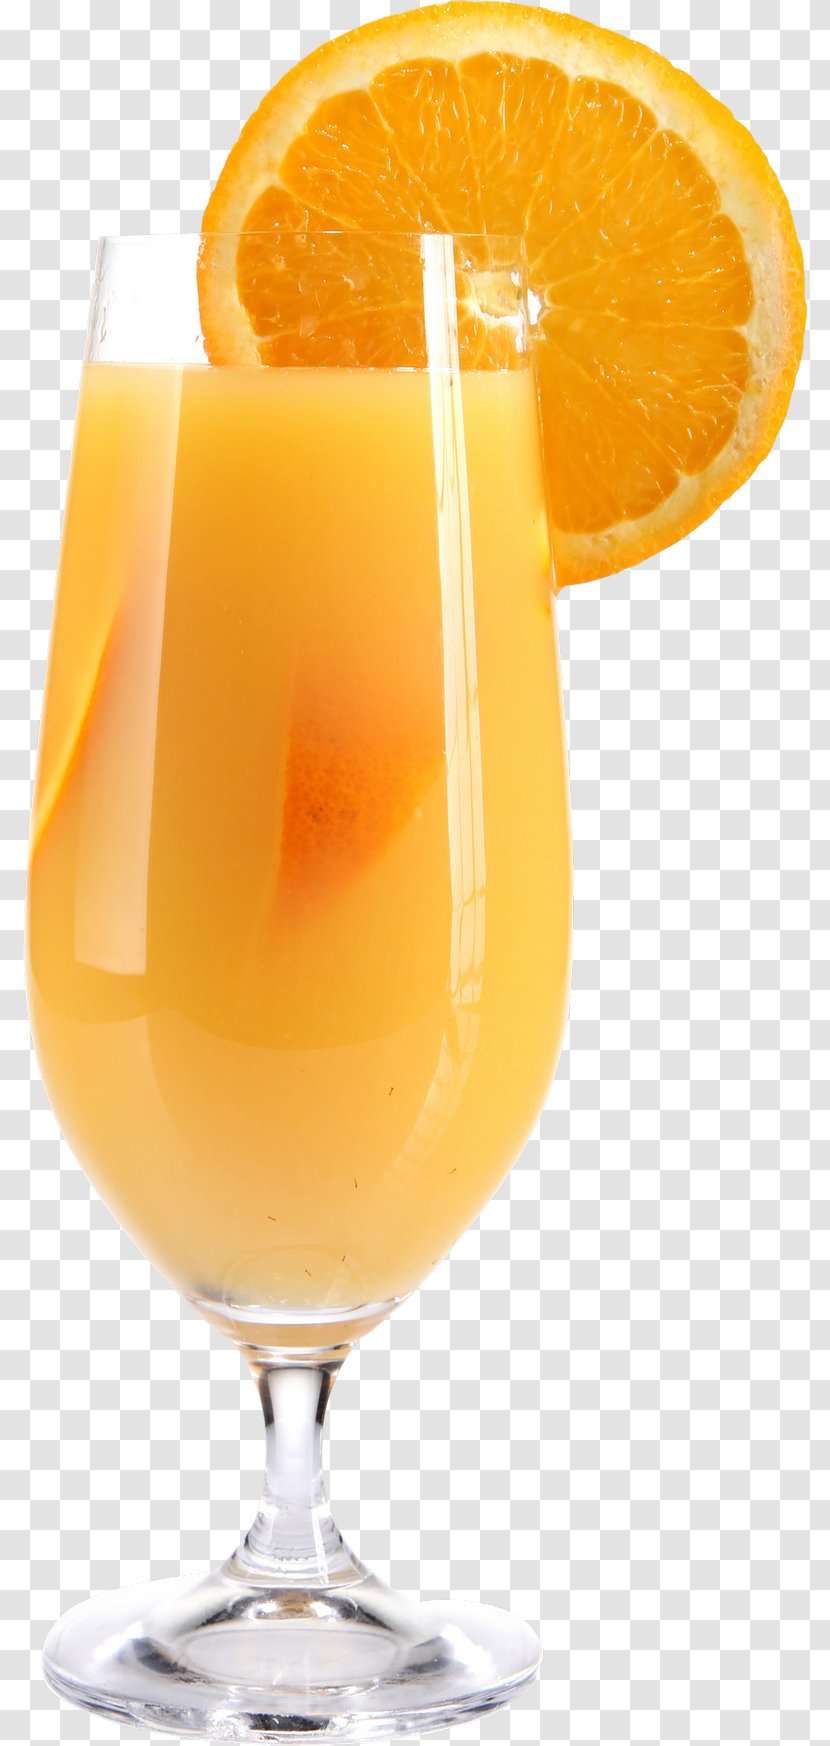 Orange Juice Drink GIF Transparent PNG